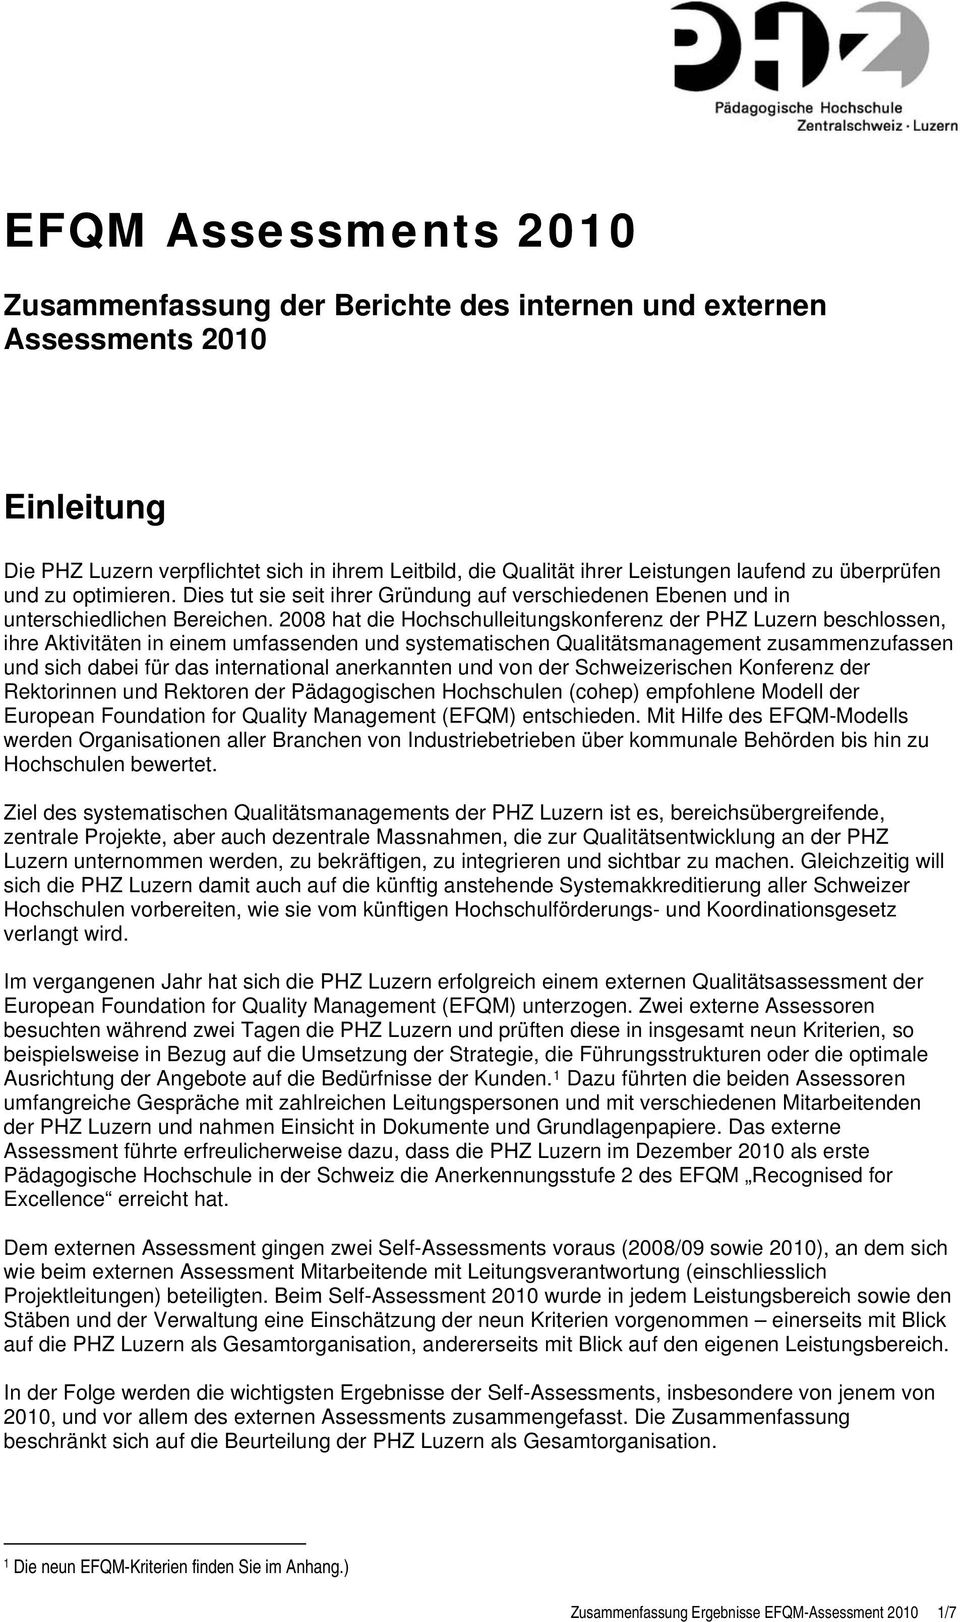 2008 hat die Hochschulleitungskonferenz der PHZ Luzern beschlossen, ihre Aktivitäten in einem umfassenden und systematischen Qualitätsmanagement zusammenzufassen und sich dabei für das international